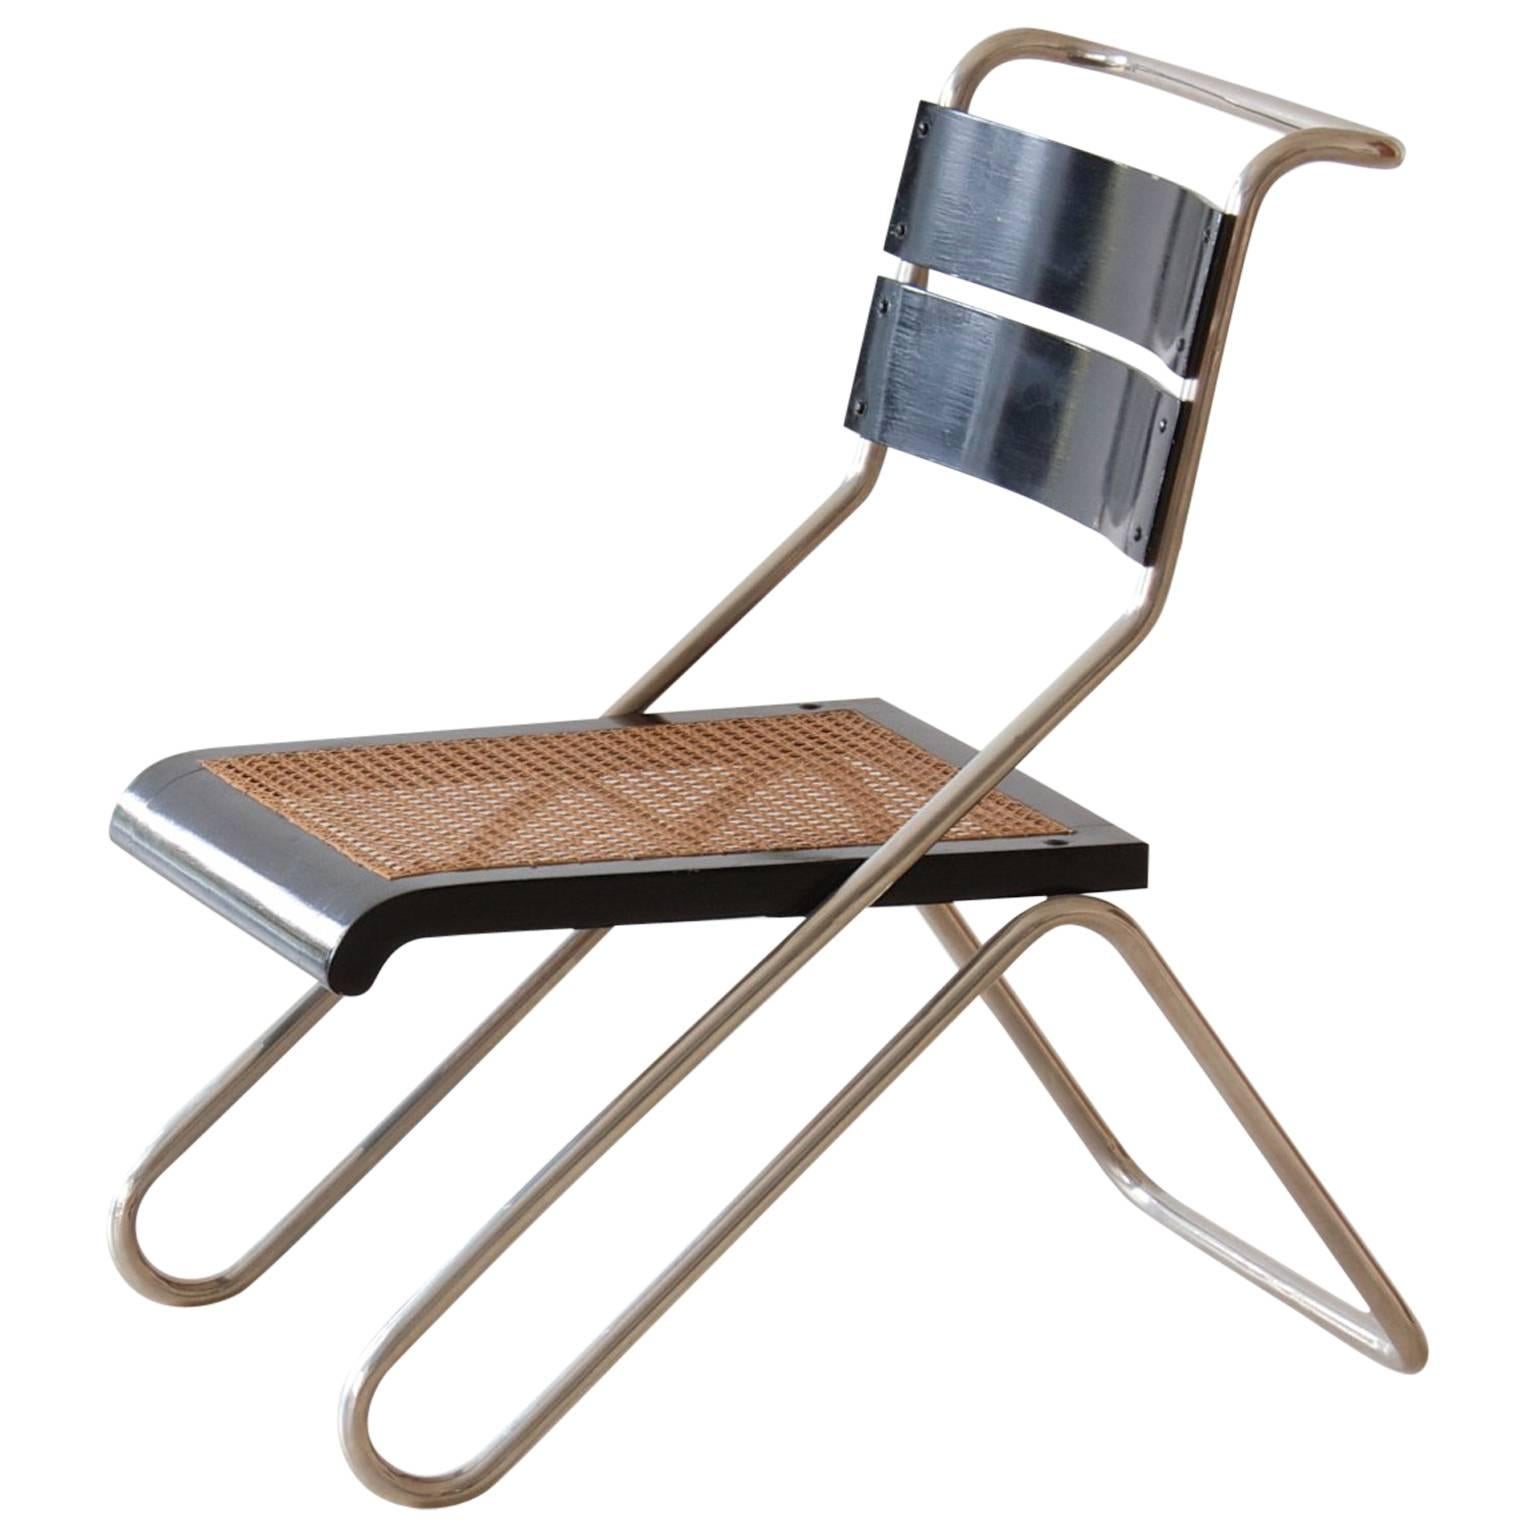 Bauhaus Tubular Steel Chair by Erich Dieckmann, Manufactured by Cebaso, 1931